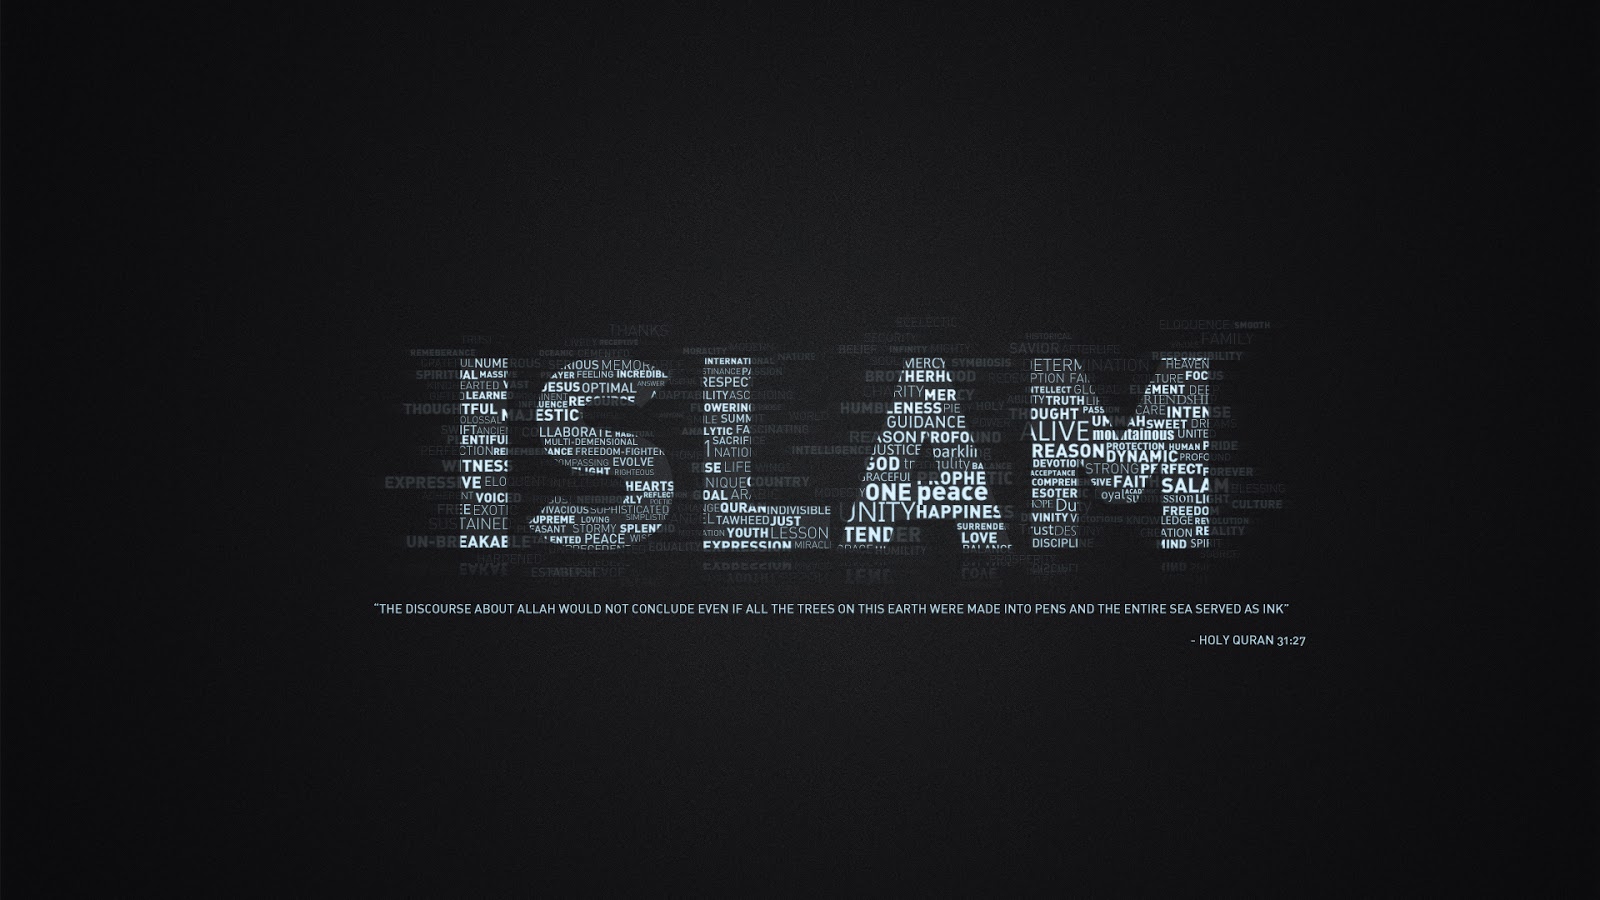 خلفيات اسلامية 2015 جديدة -wallpaper hd startimes , خلفيات متحركة للكمبيوتر hd -Islamic Wallpapers 2013_1376010225_899.